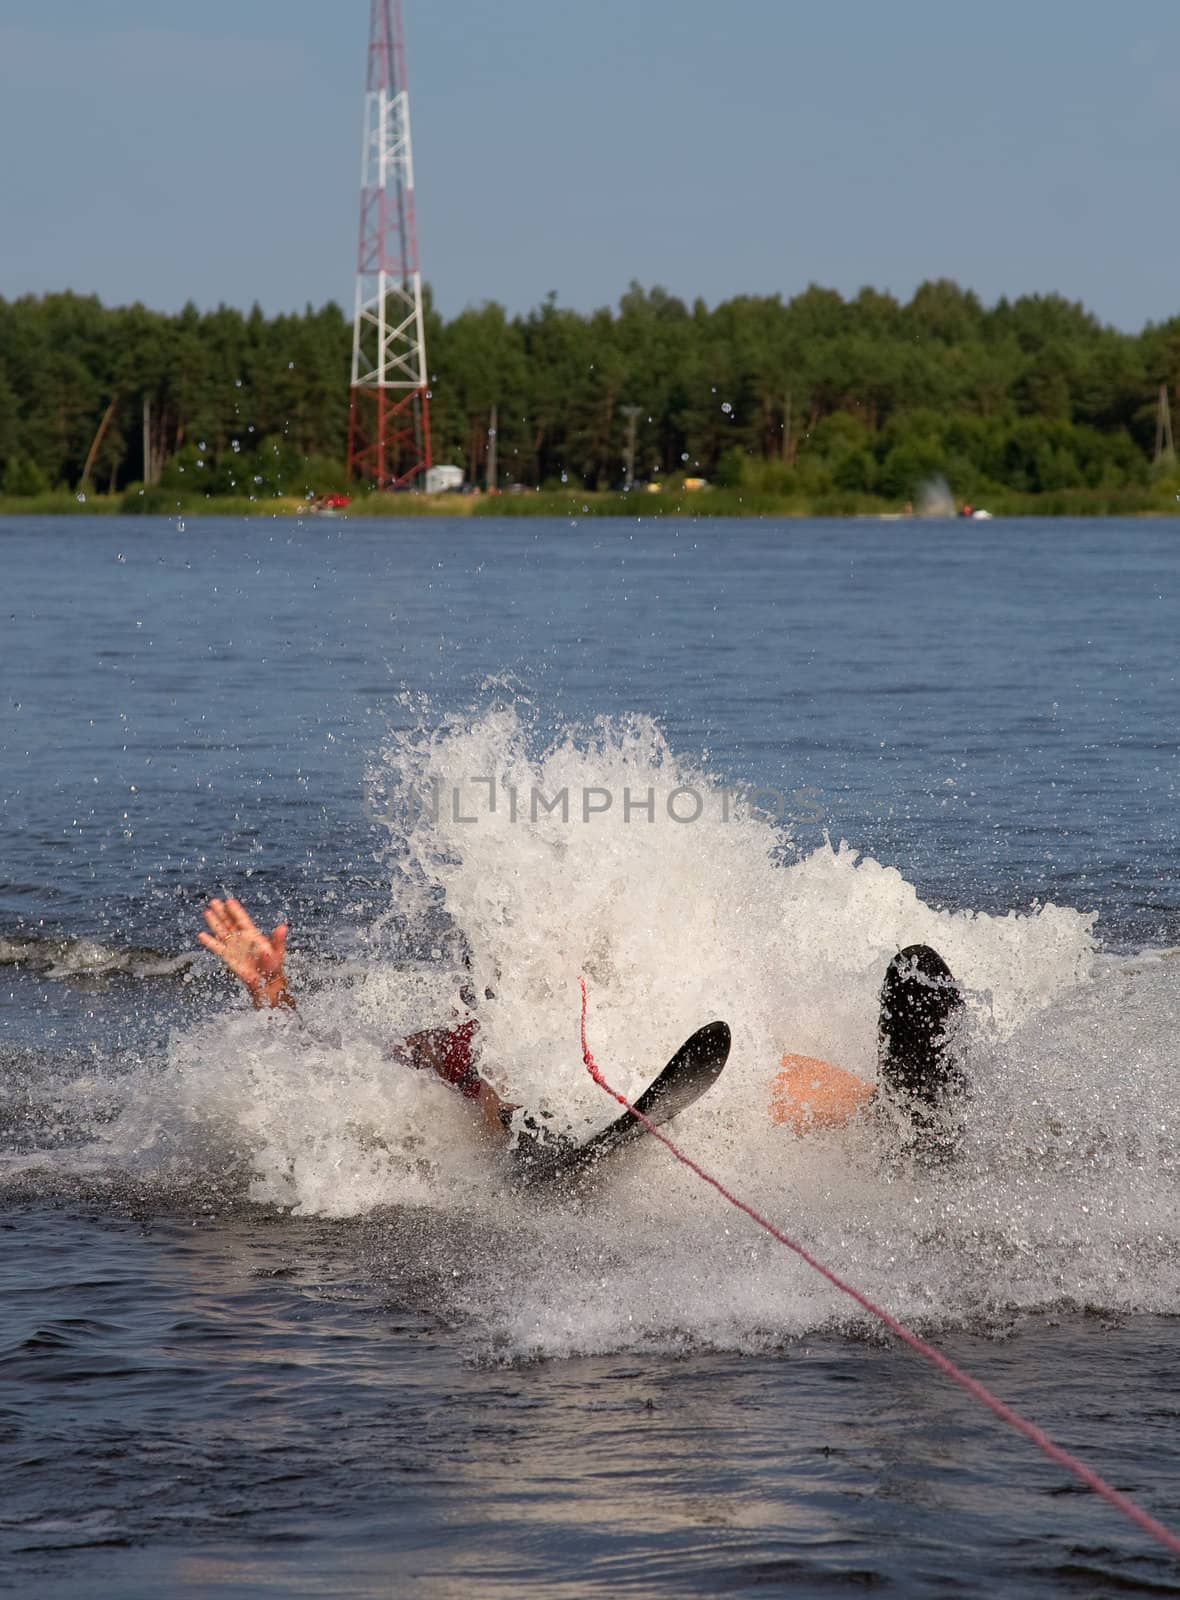 water ski falling river sport